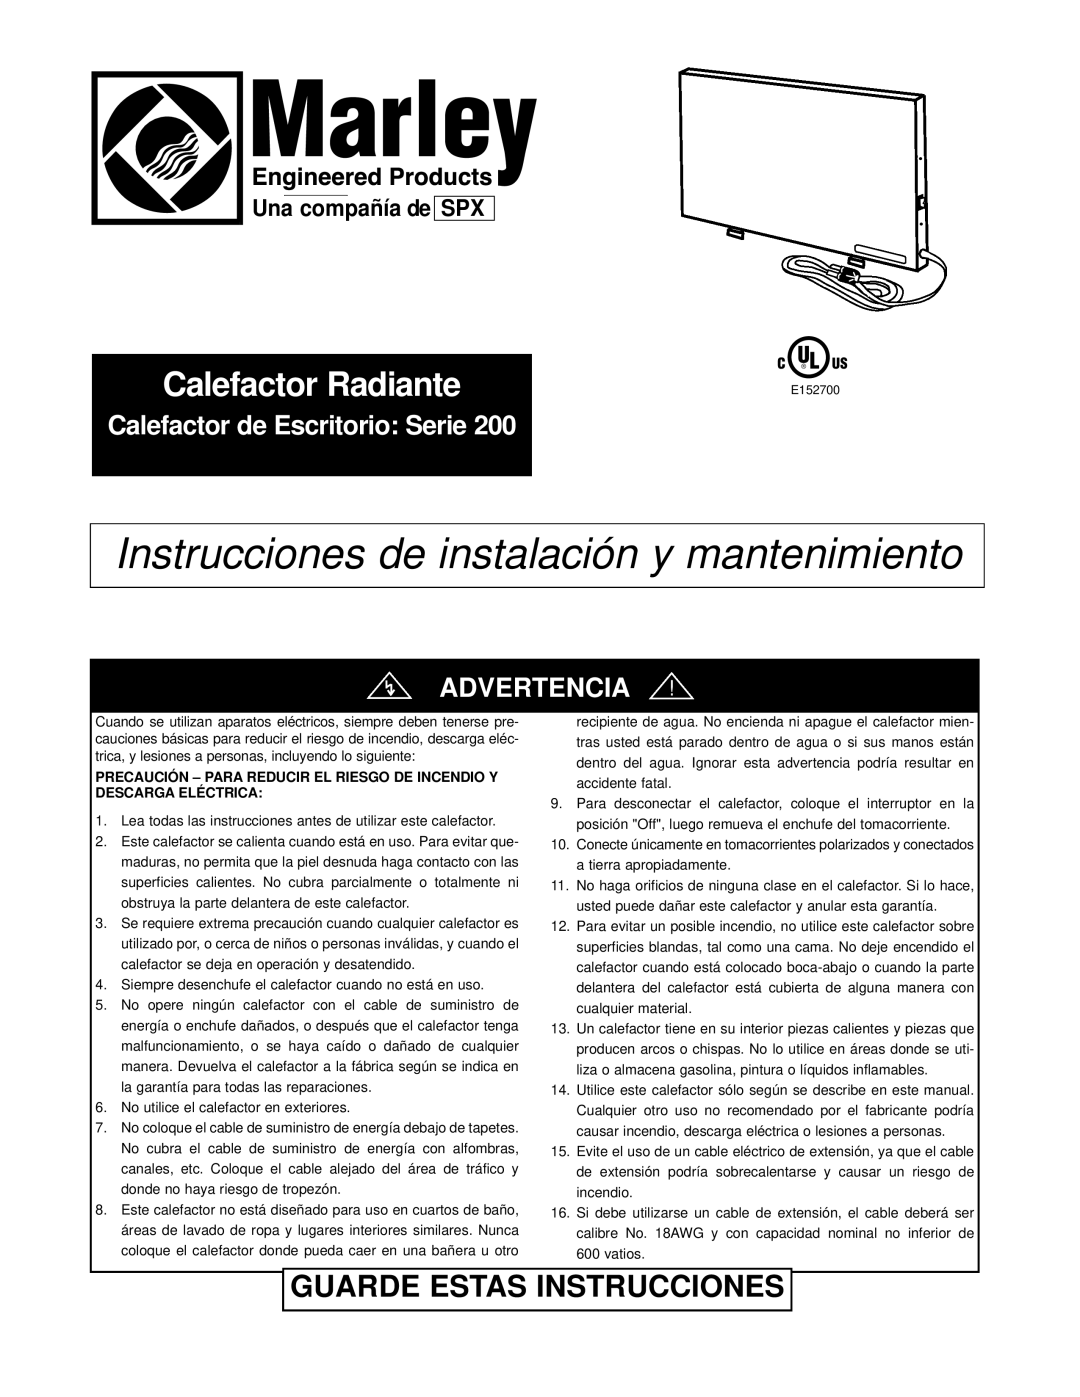 Marley Engineered Products Radiant Heater warranty Guarde Estas Instrucciones, Calefactor de Escritorio Serie, Advertencia 